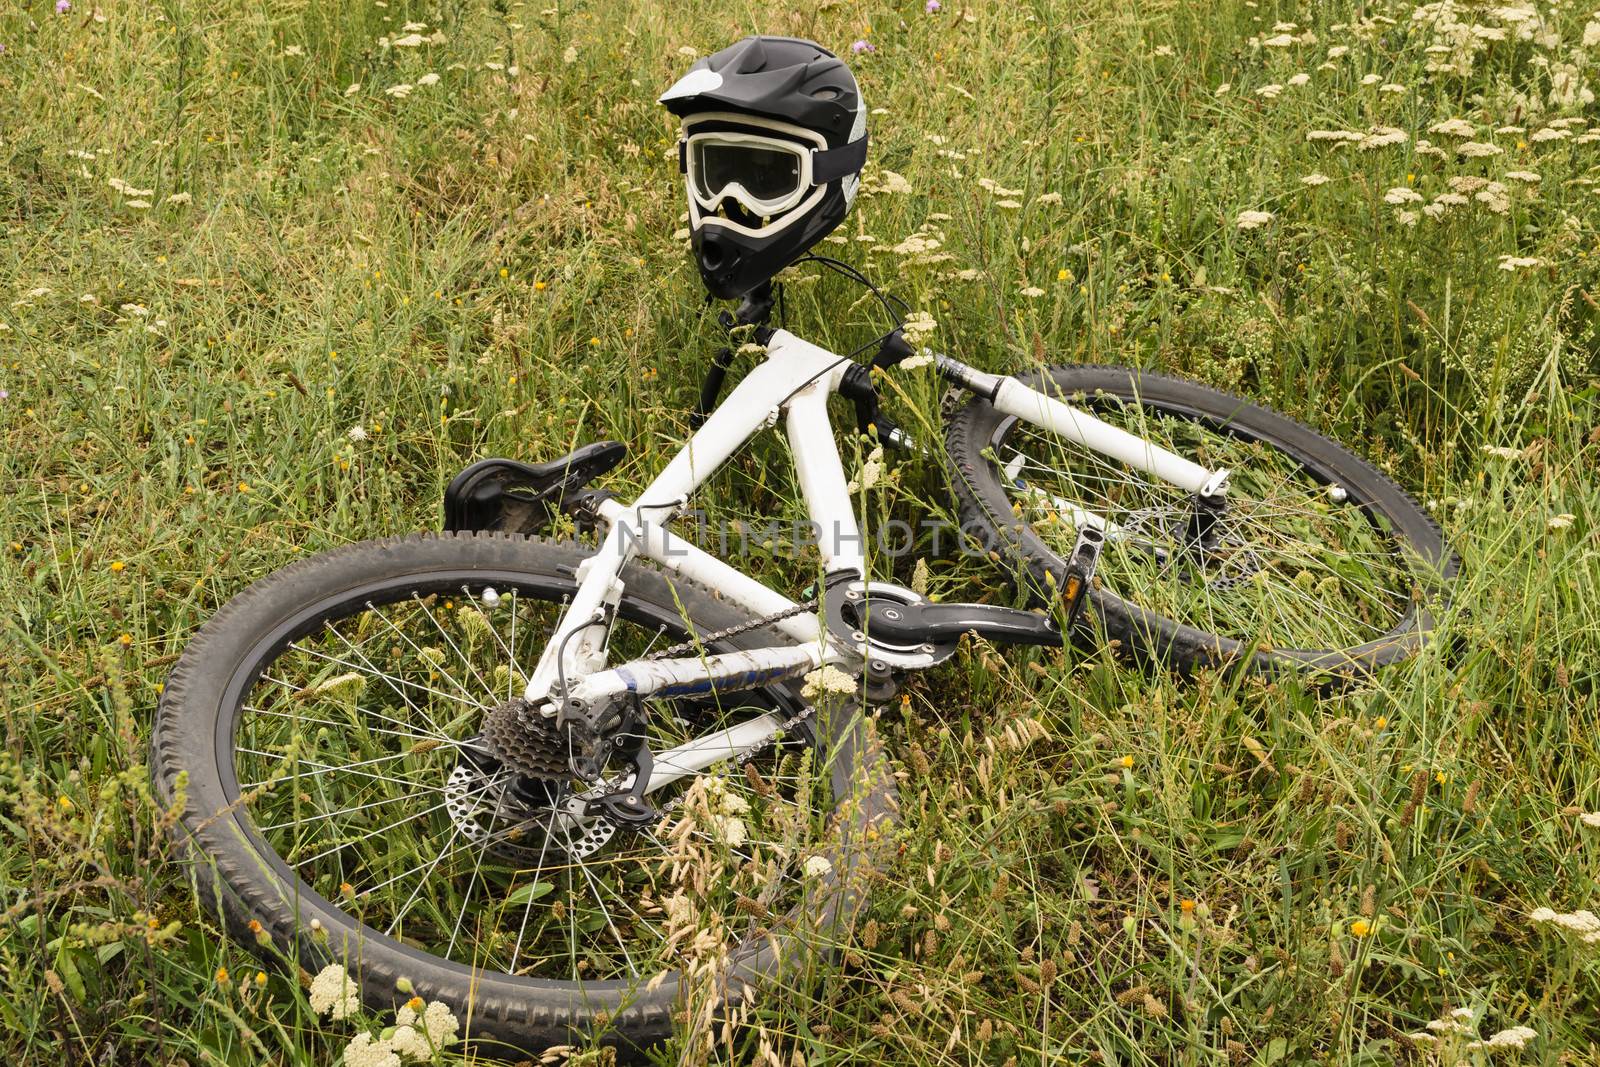 Racing bike and helmet in grass